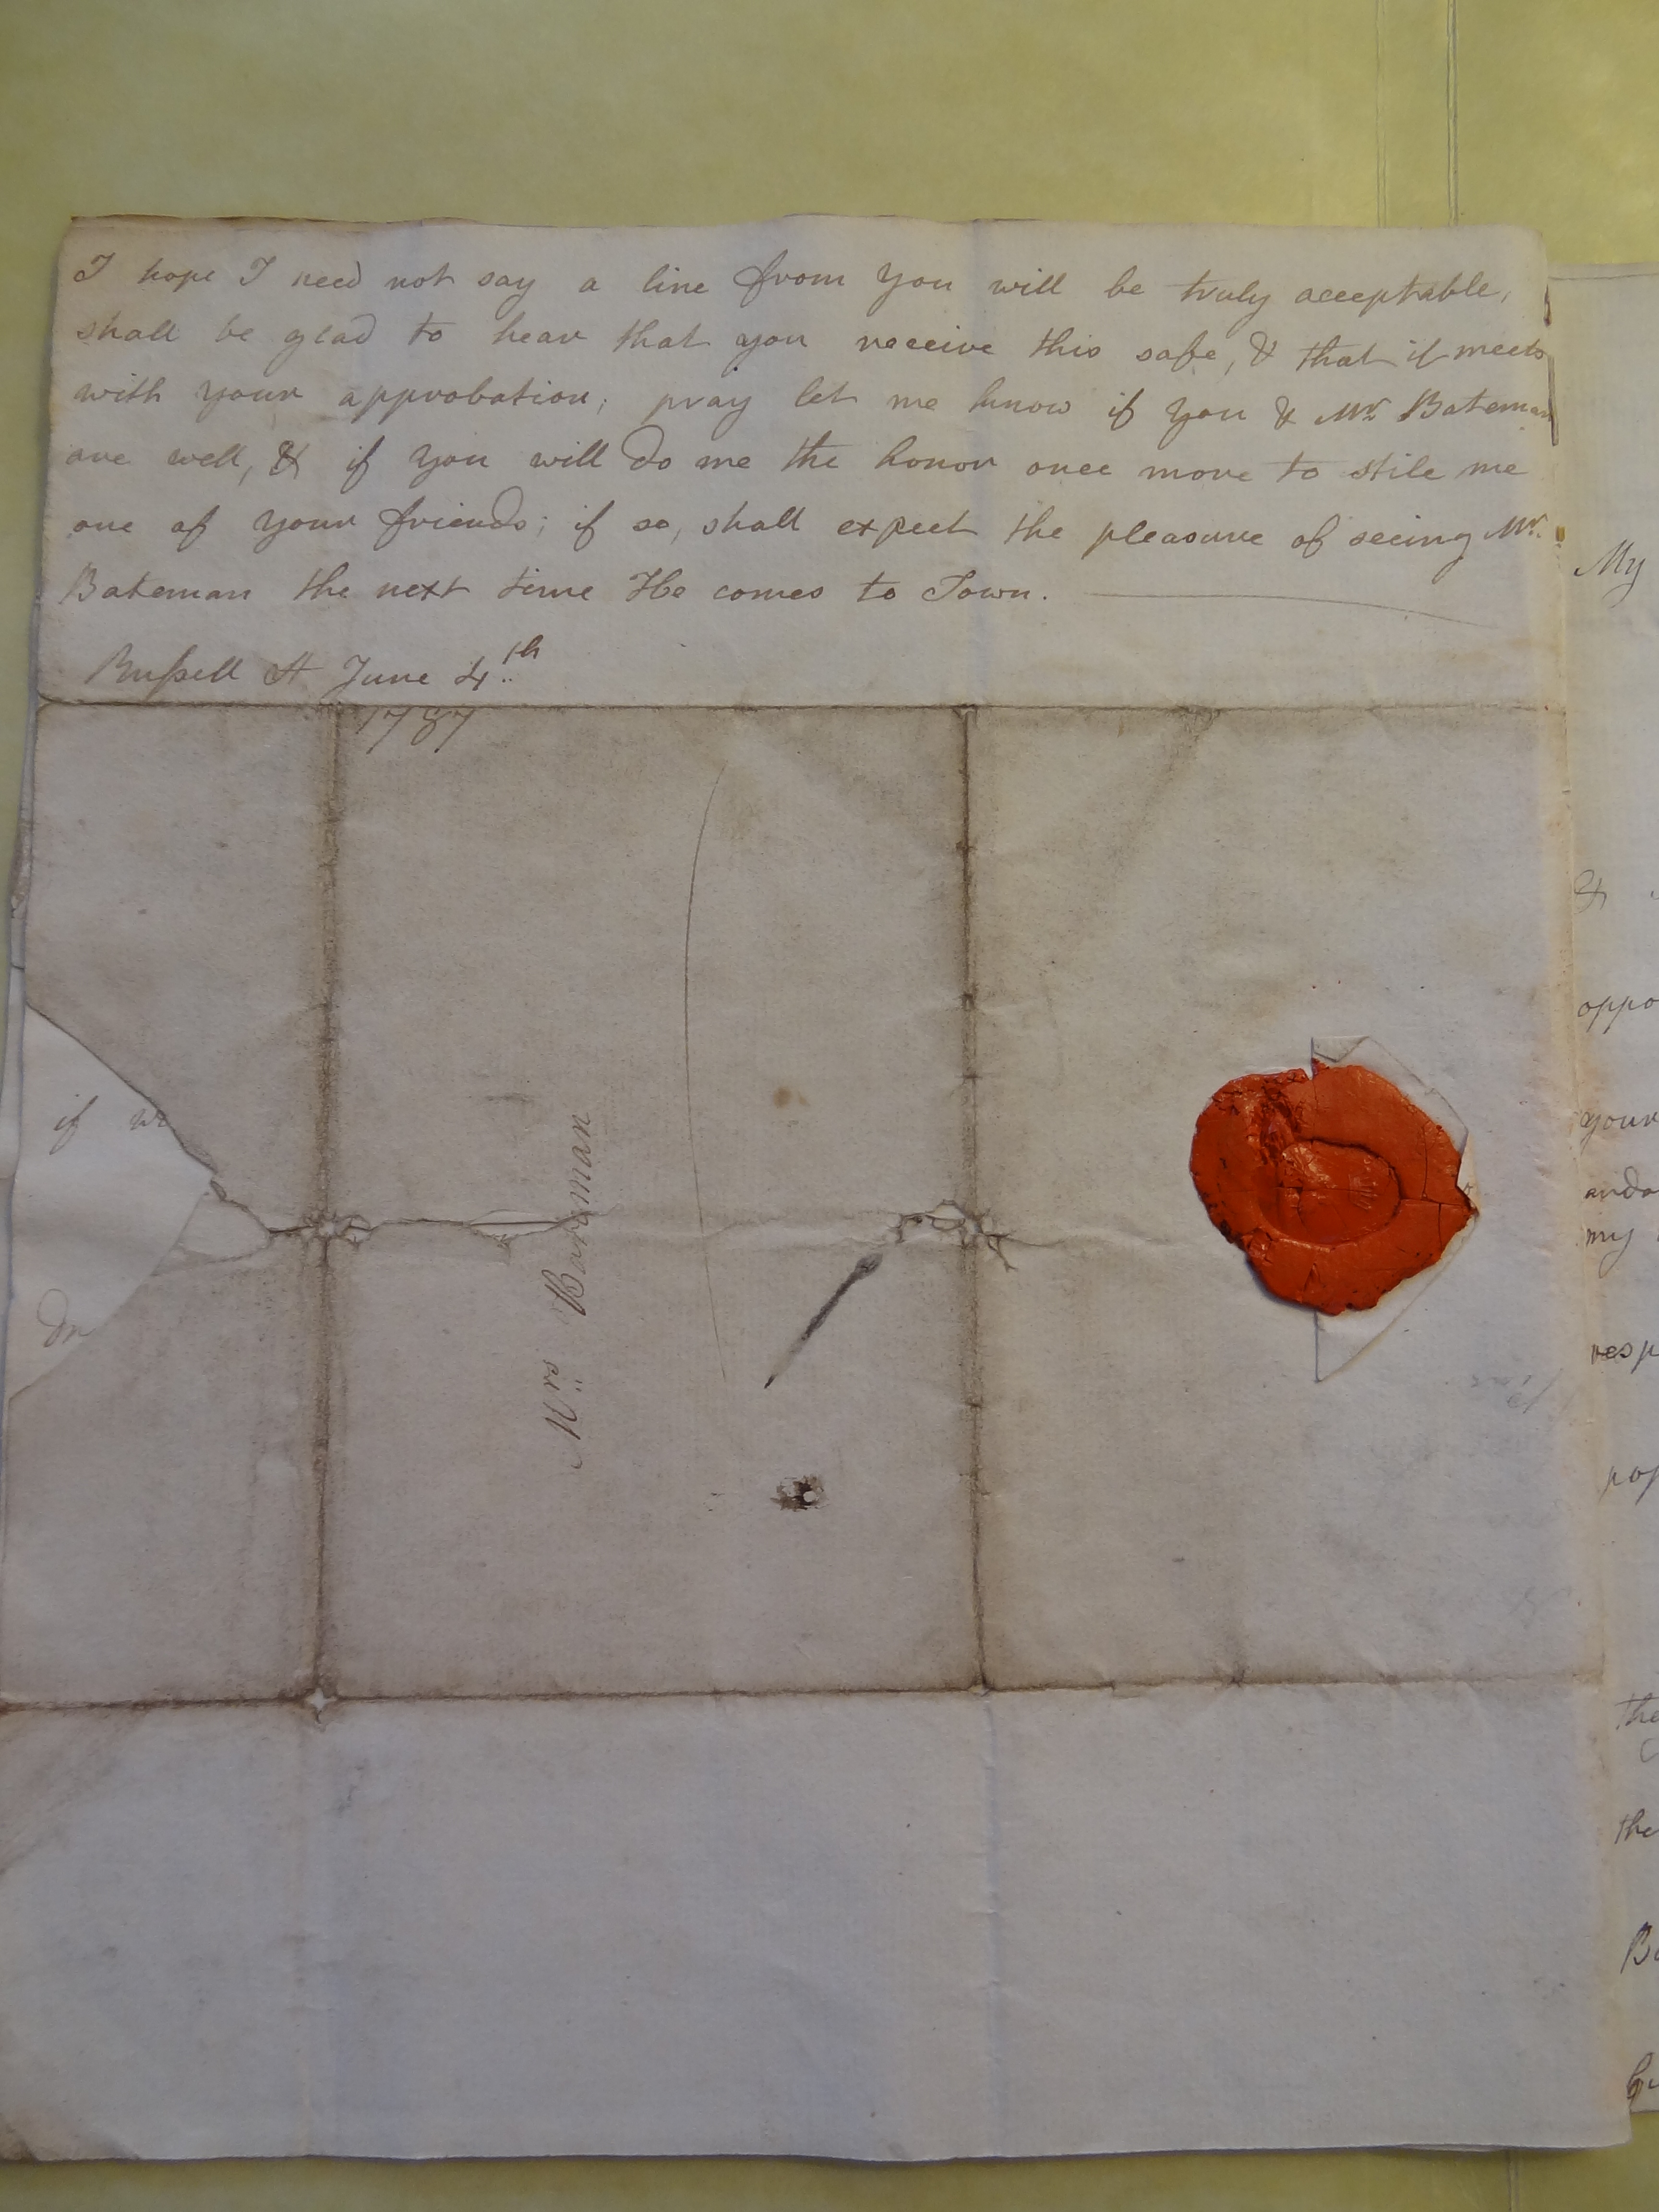 Image #4 of letter: Anna Allwood to Rebekah Bateman, 4 June 1787